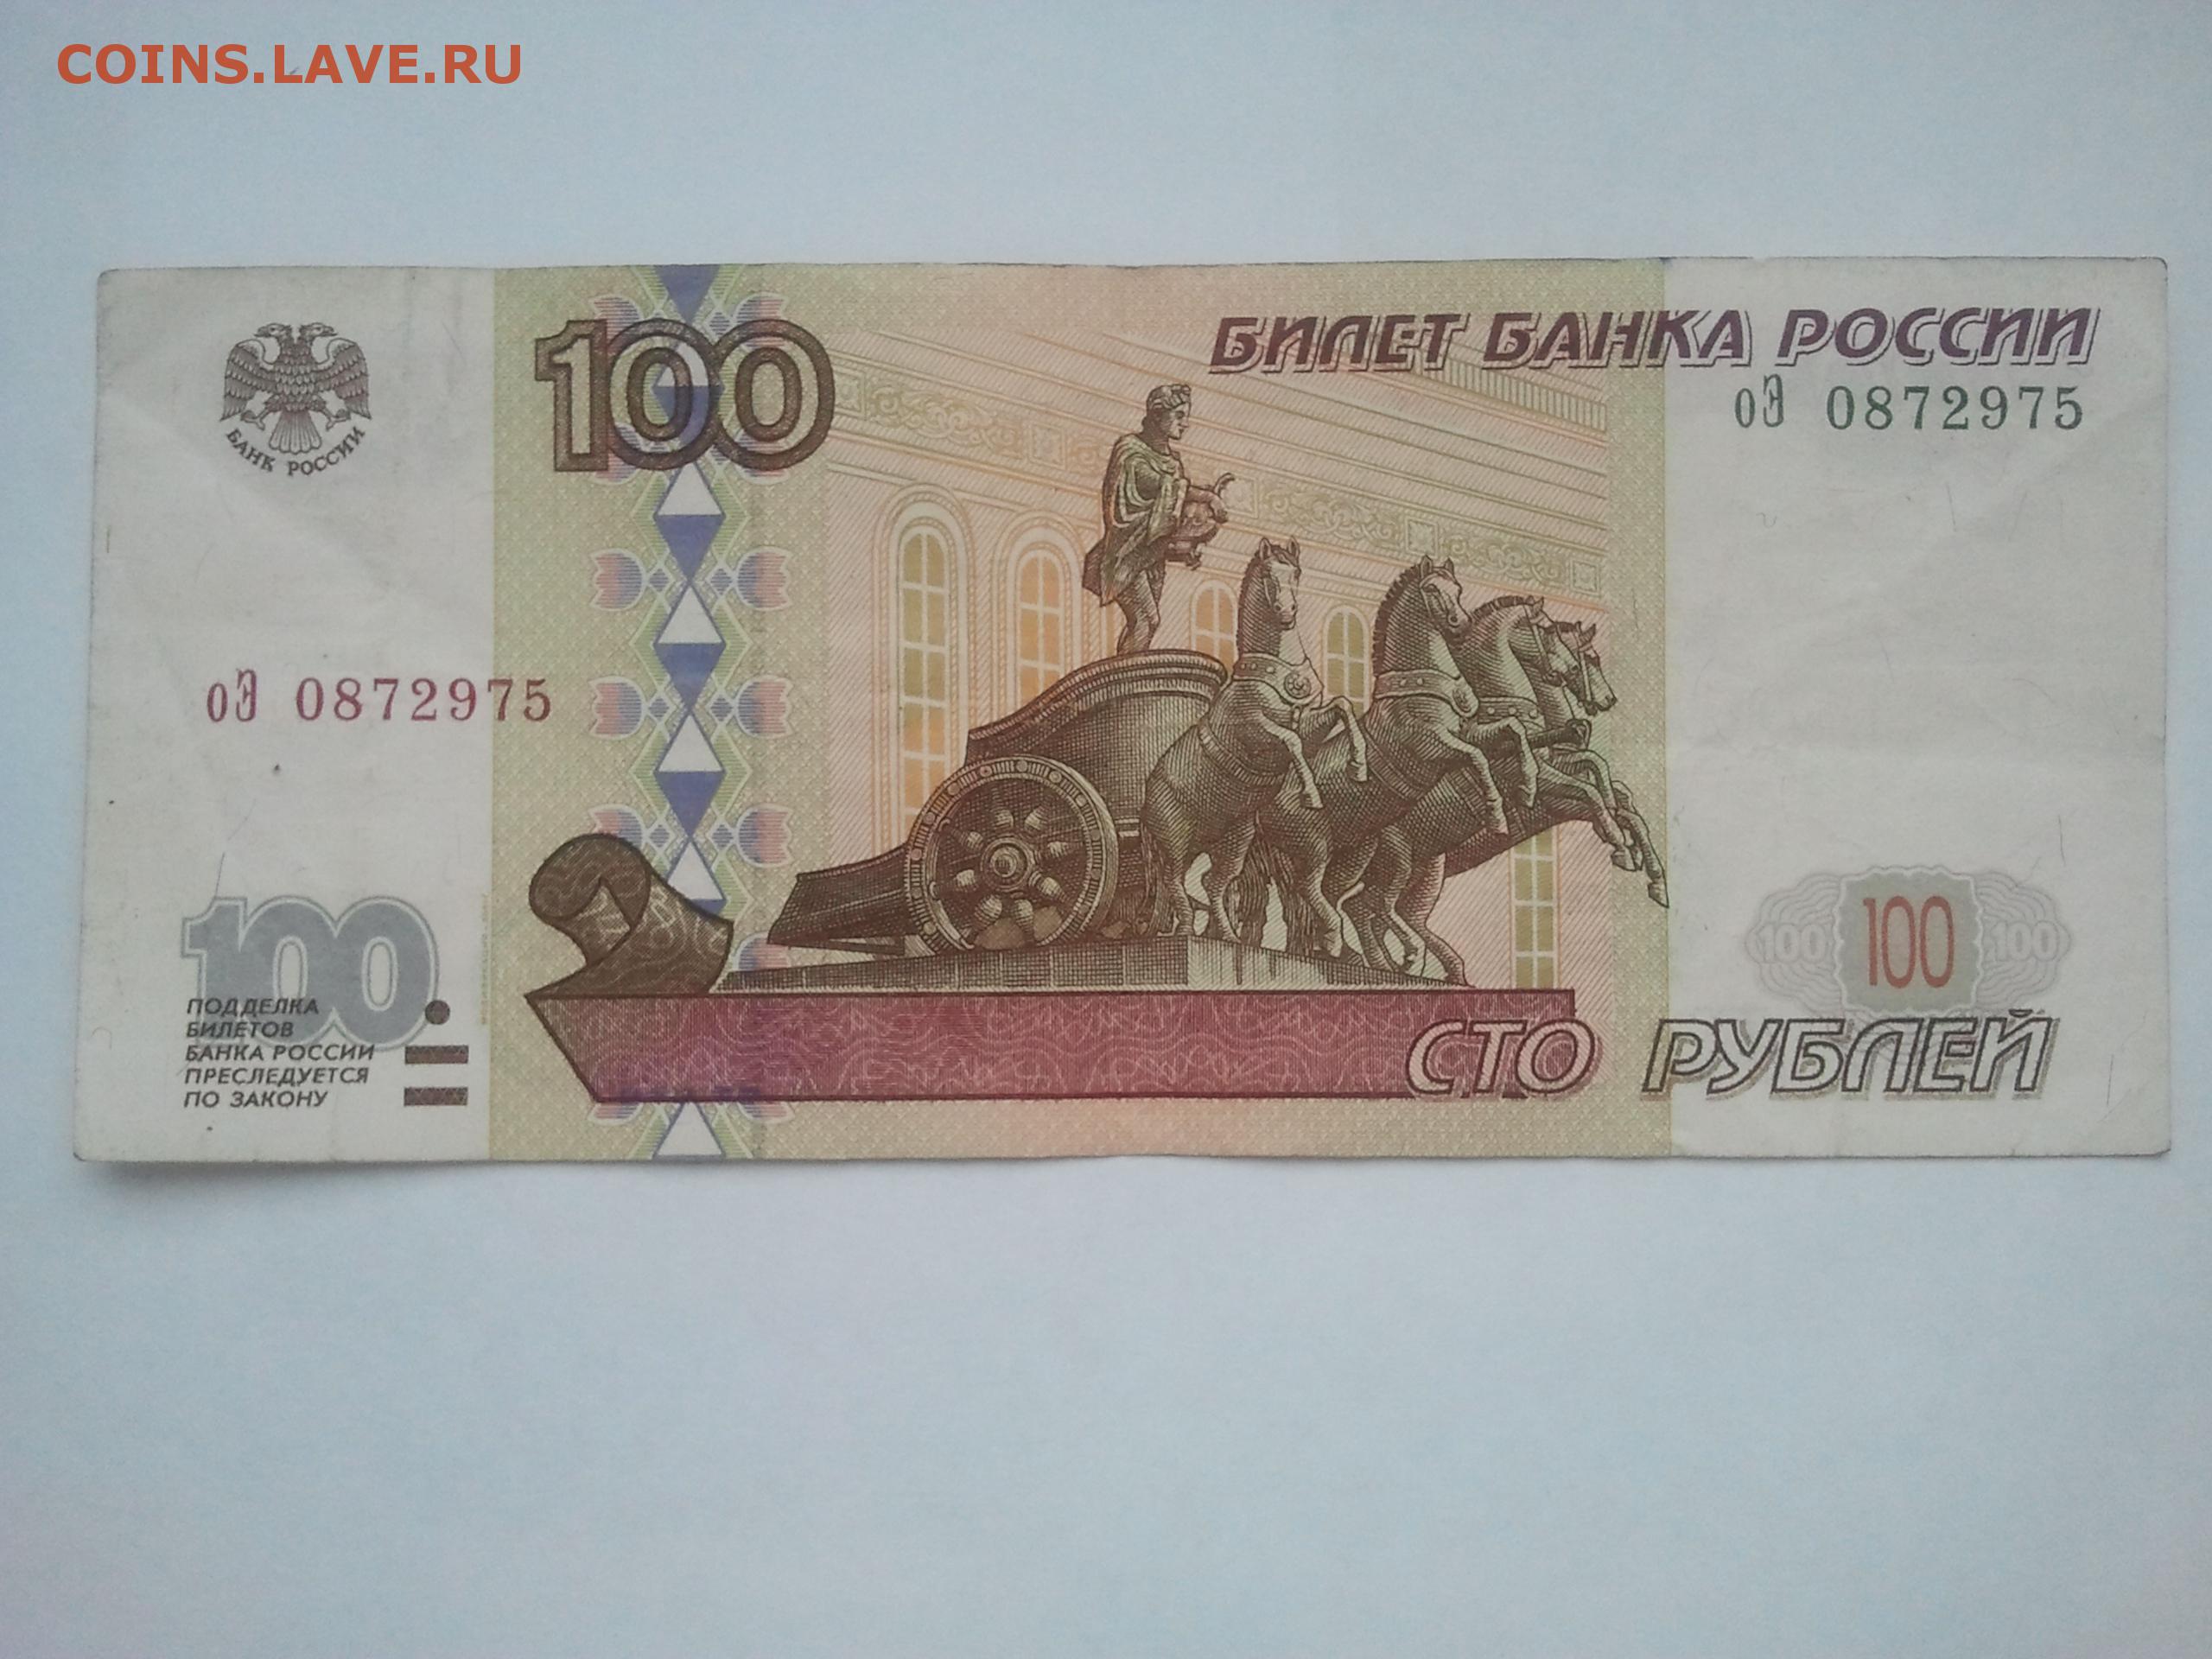 Покажи сторублевую купюру. 100 Рублей 1997 года. Купюра 100 рублей. Банкнота 100 рублей. Фальшивые СТО рублей.